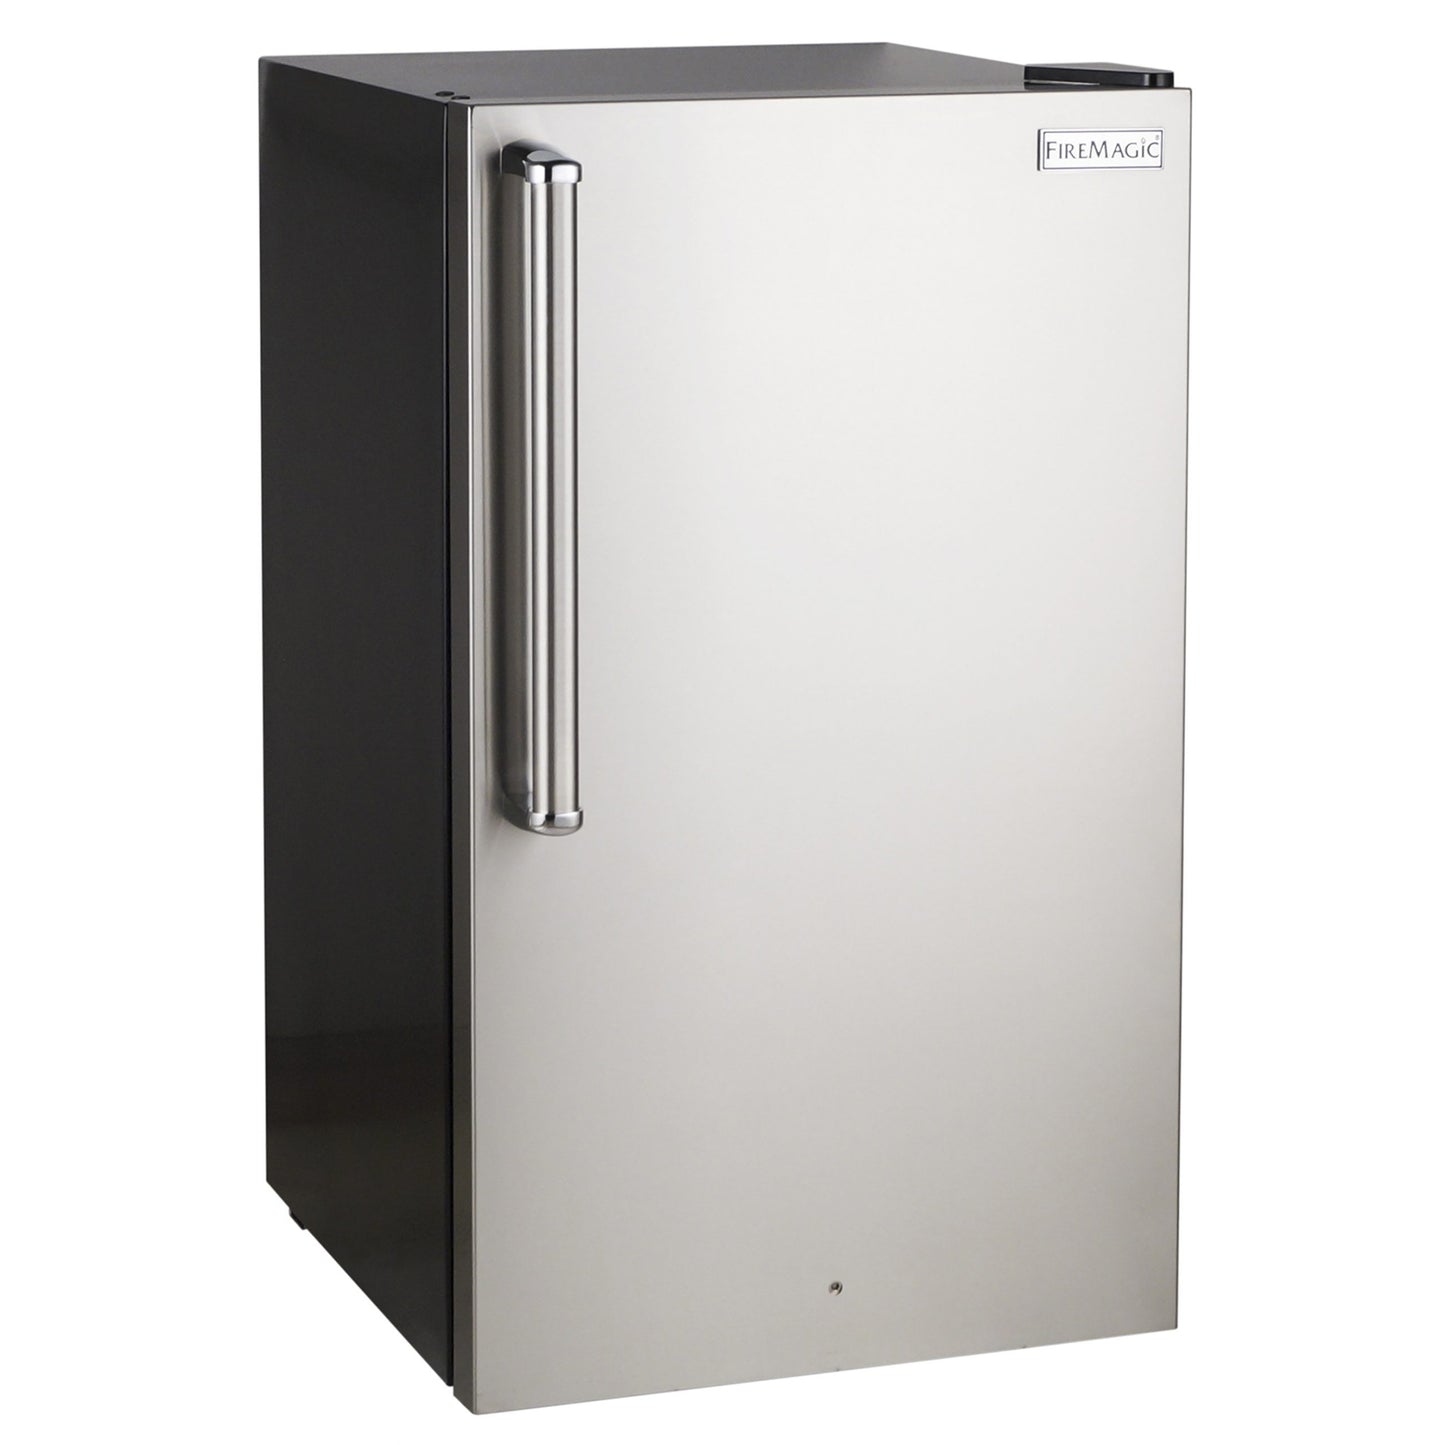 FireMagic Premium Refrigerator